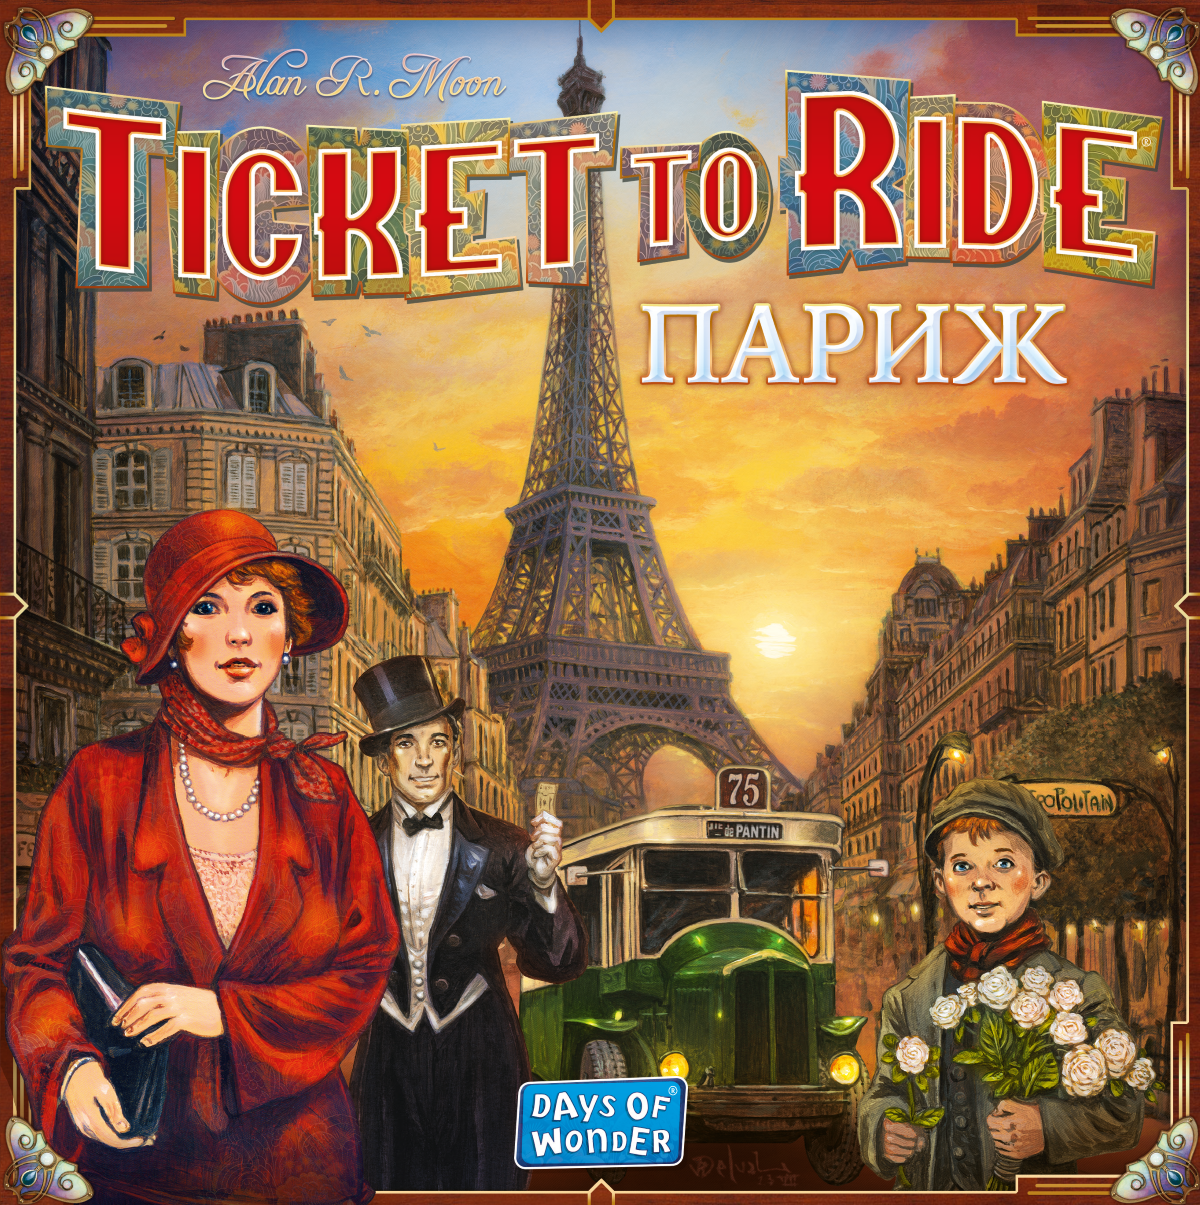 Настільна гра Квиток на потяг. Париж (Ticket To Ride: Paris), бренду Lord of Boards, для 2-4 гравців, час гри < 30хв. - 3 - KUBIX 